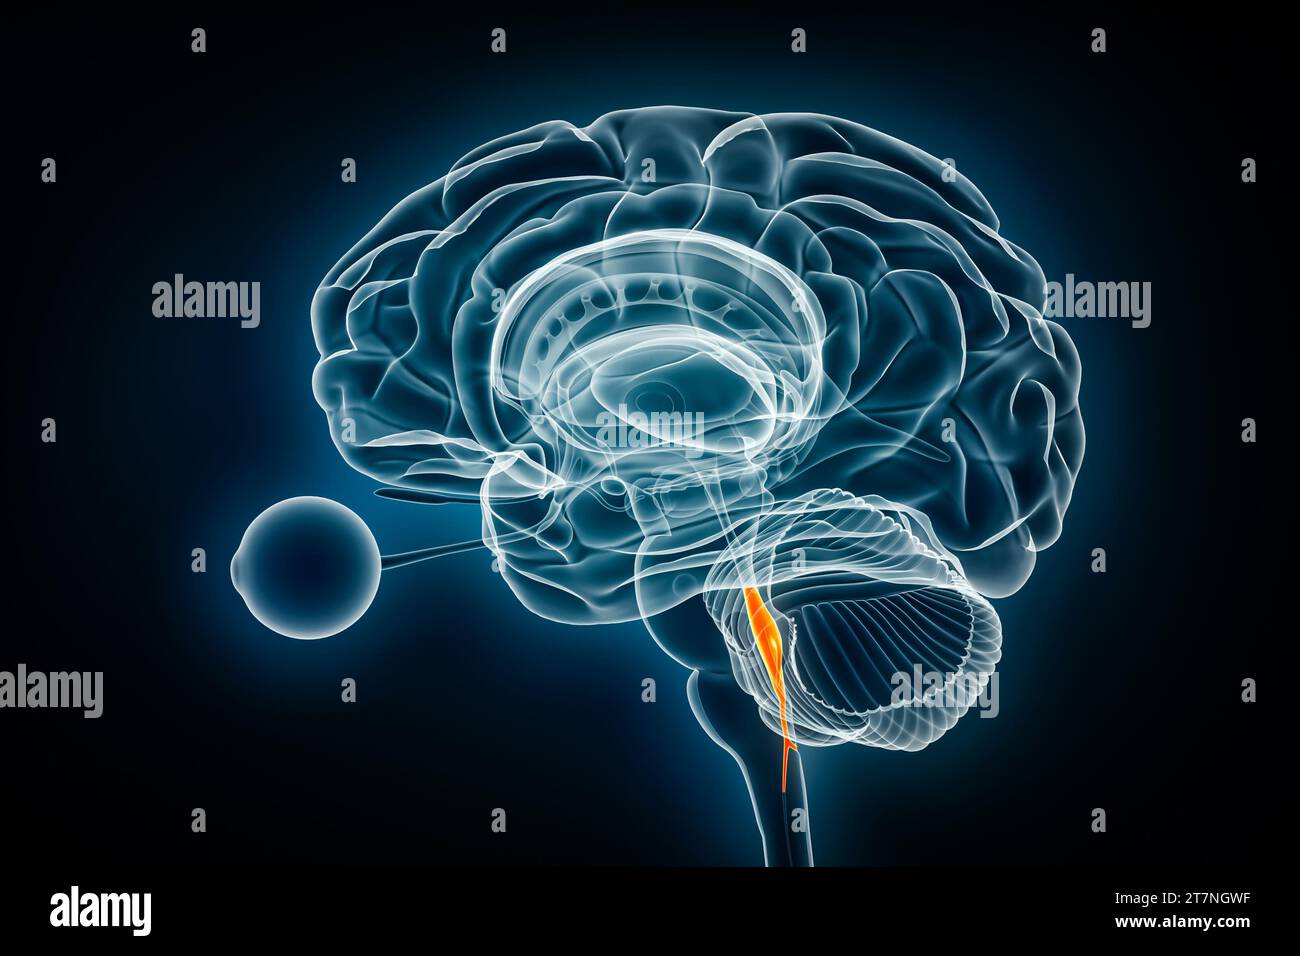 Illustrazione del rendering 3D della vista a raggi X del quarto ventricolo cerebrale. Anatomia del cervello umano e del sistema ventricolare, medicina, sanità, scienza, neuroscienza Foto Stock